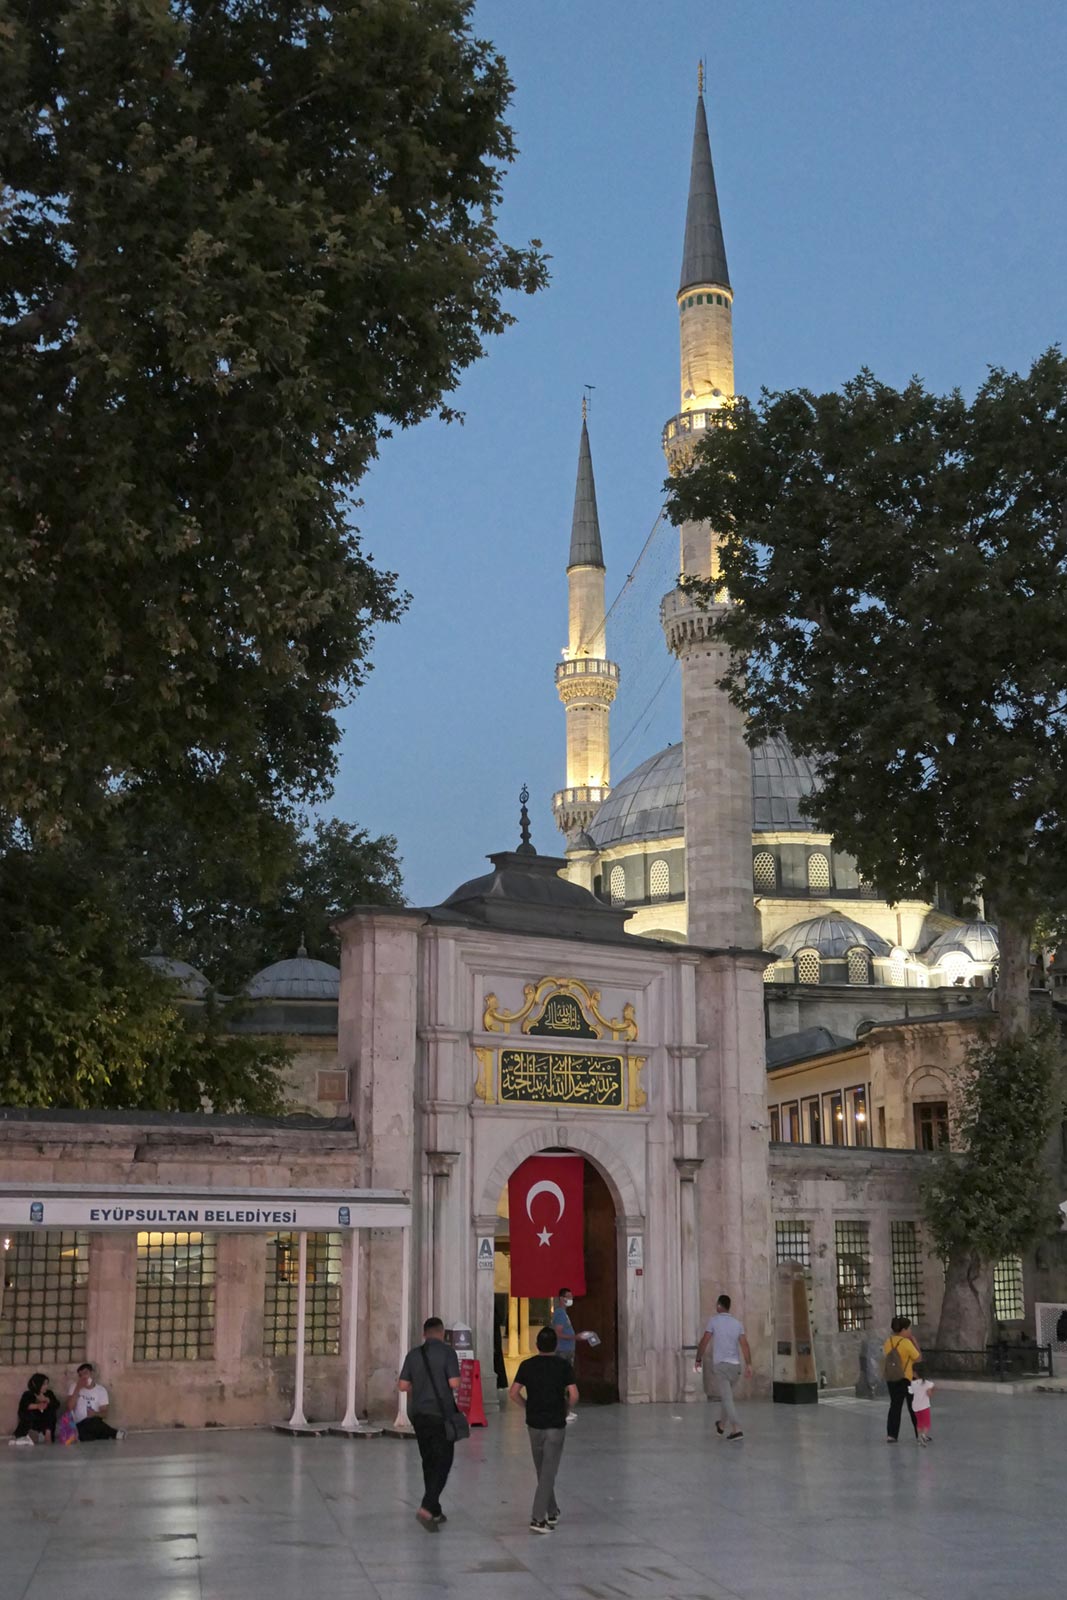 Eyup Sultanin pyhäkkö, Istanbul